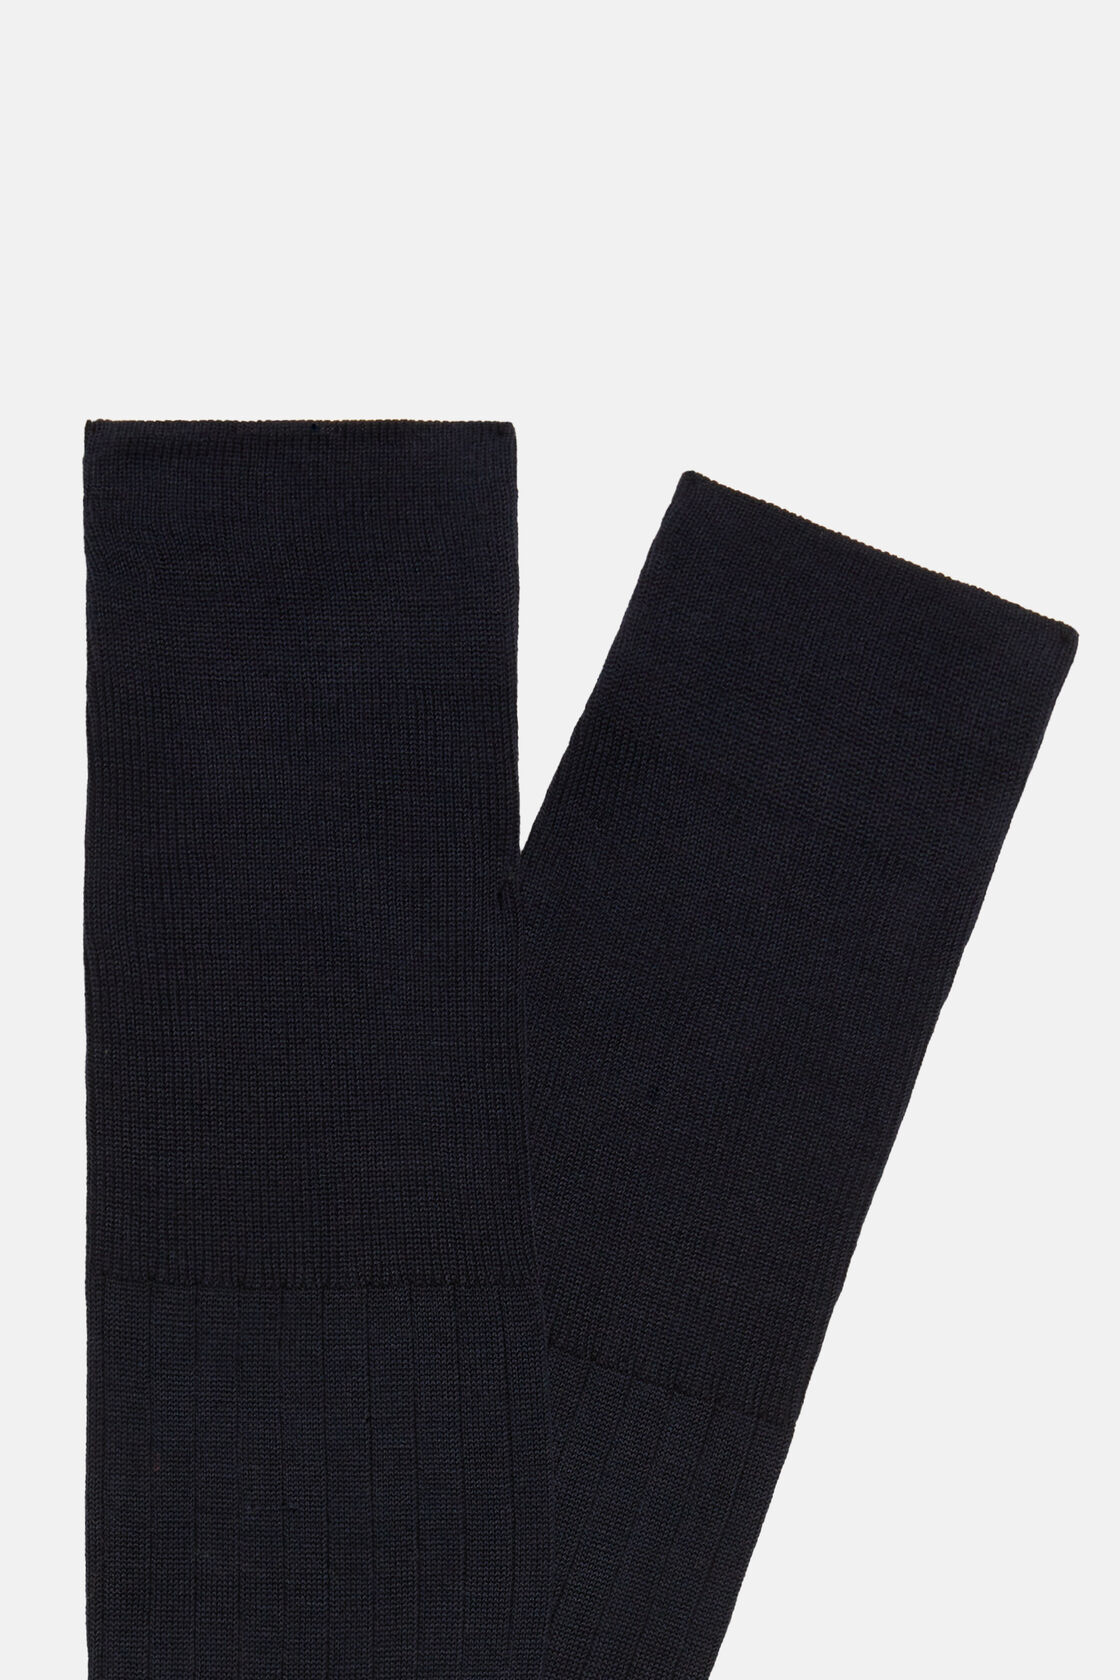 Chaussettes Côtelées En Fil d'Écosse De Coton, bleu marine, hi-res